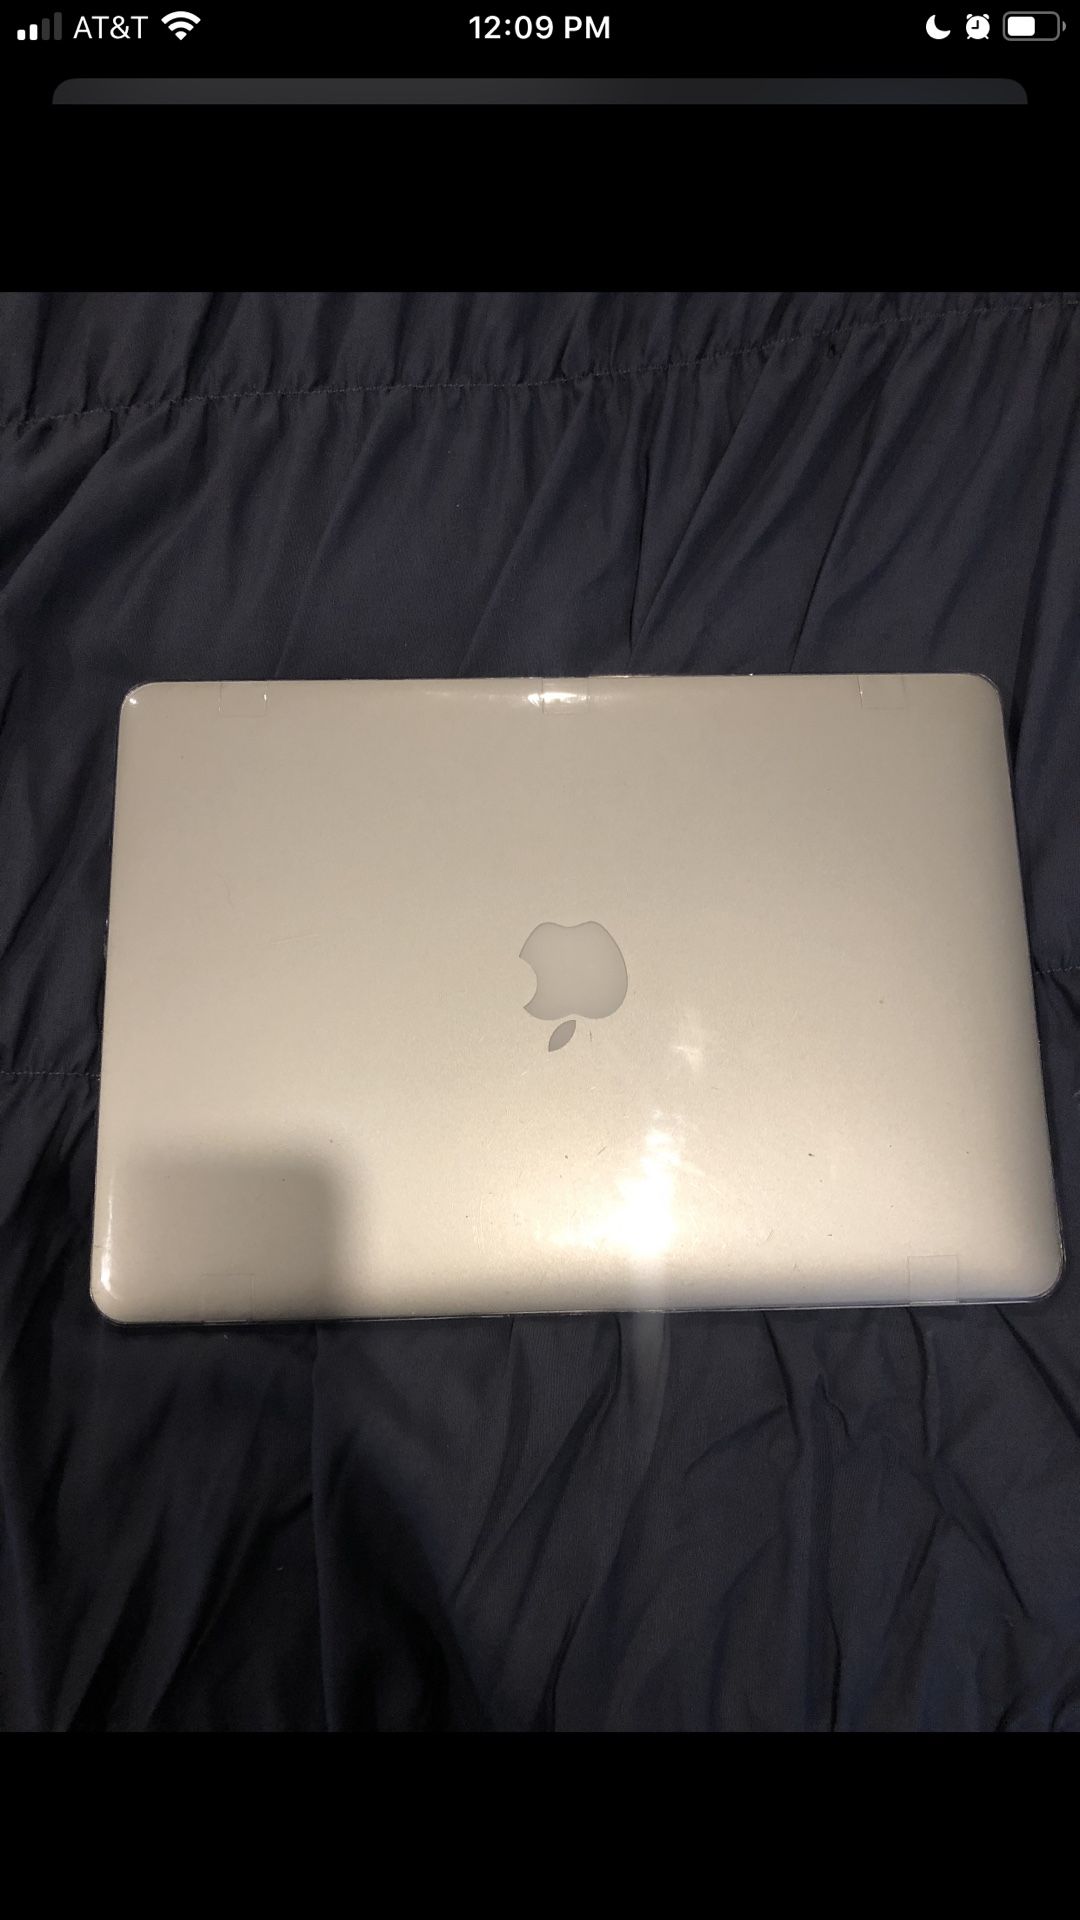 2015 Apple MacBook Air “13”